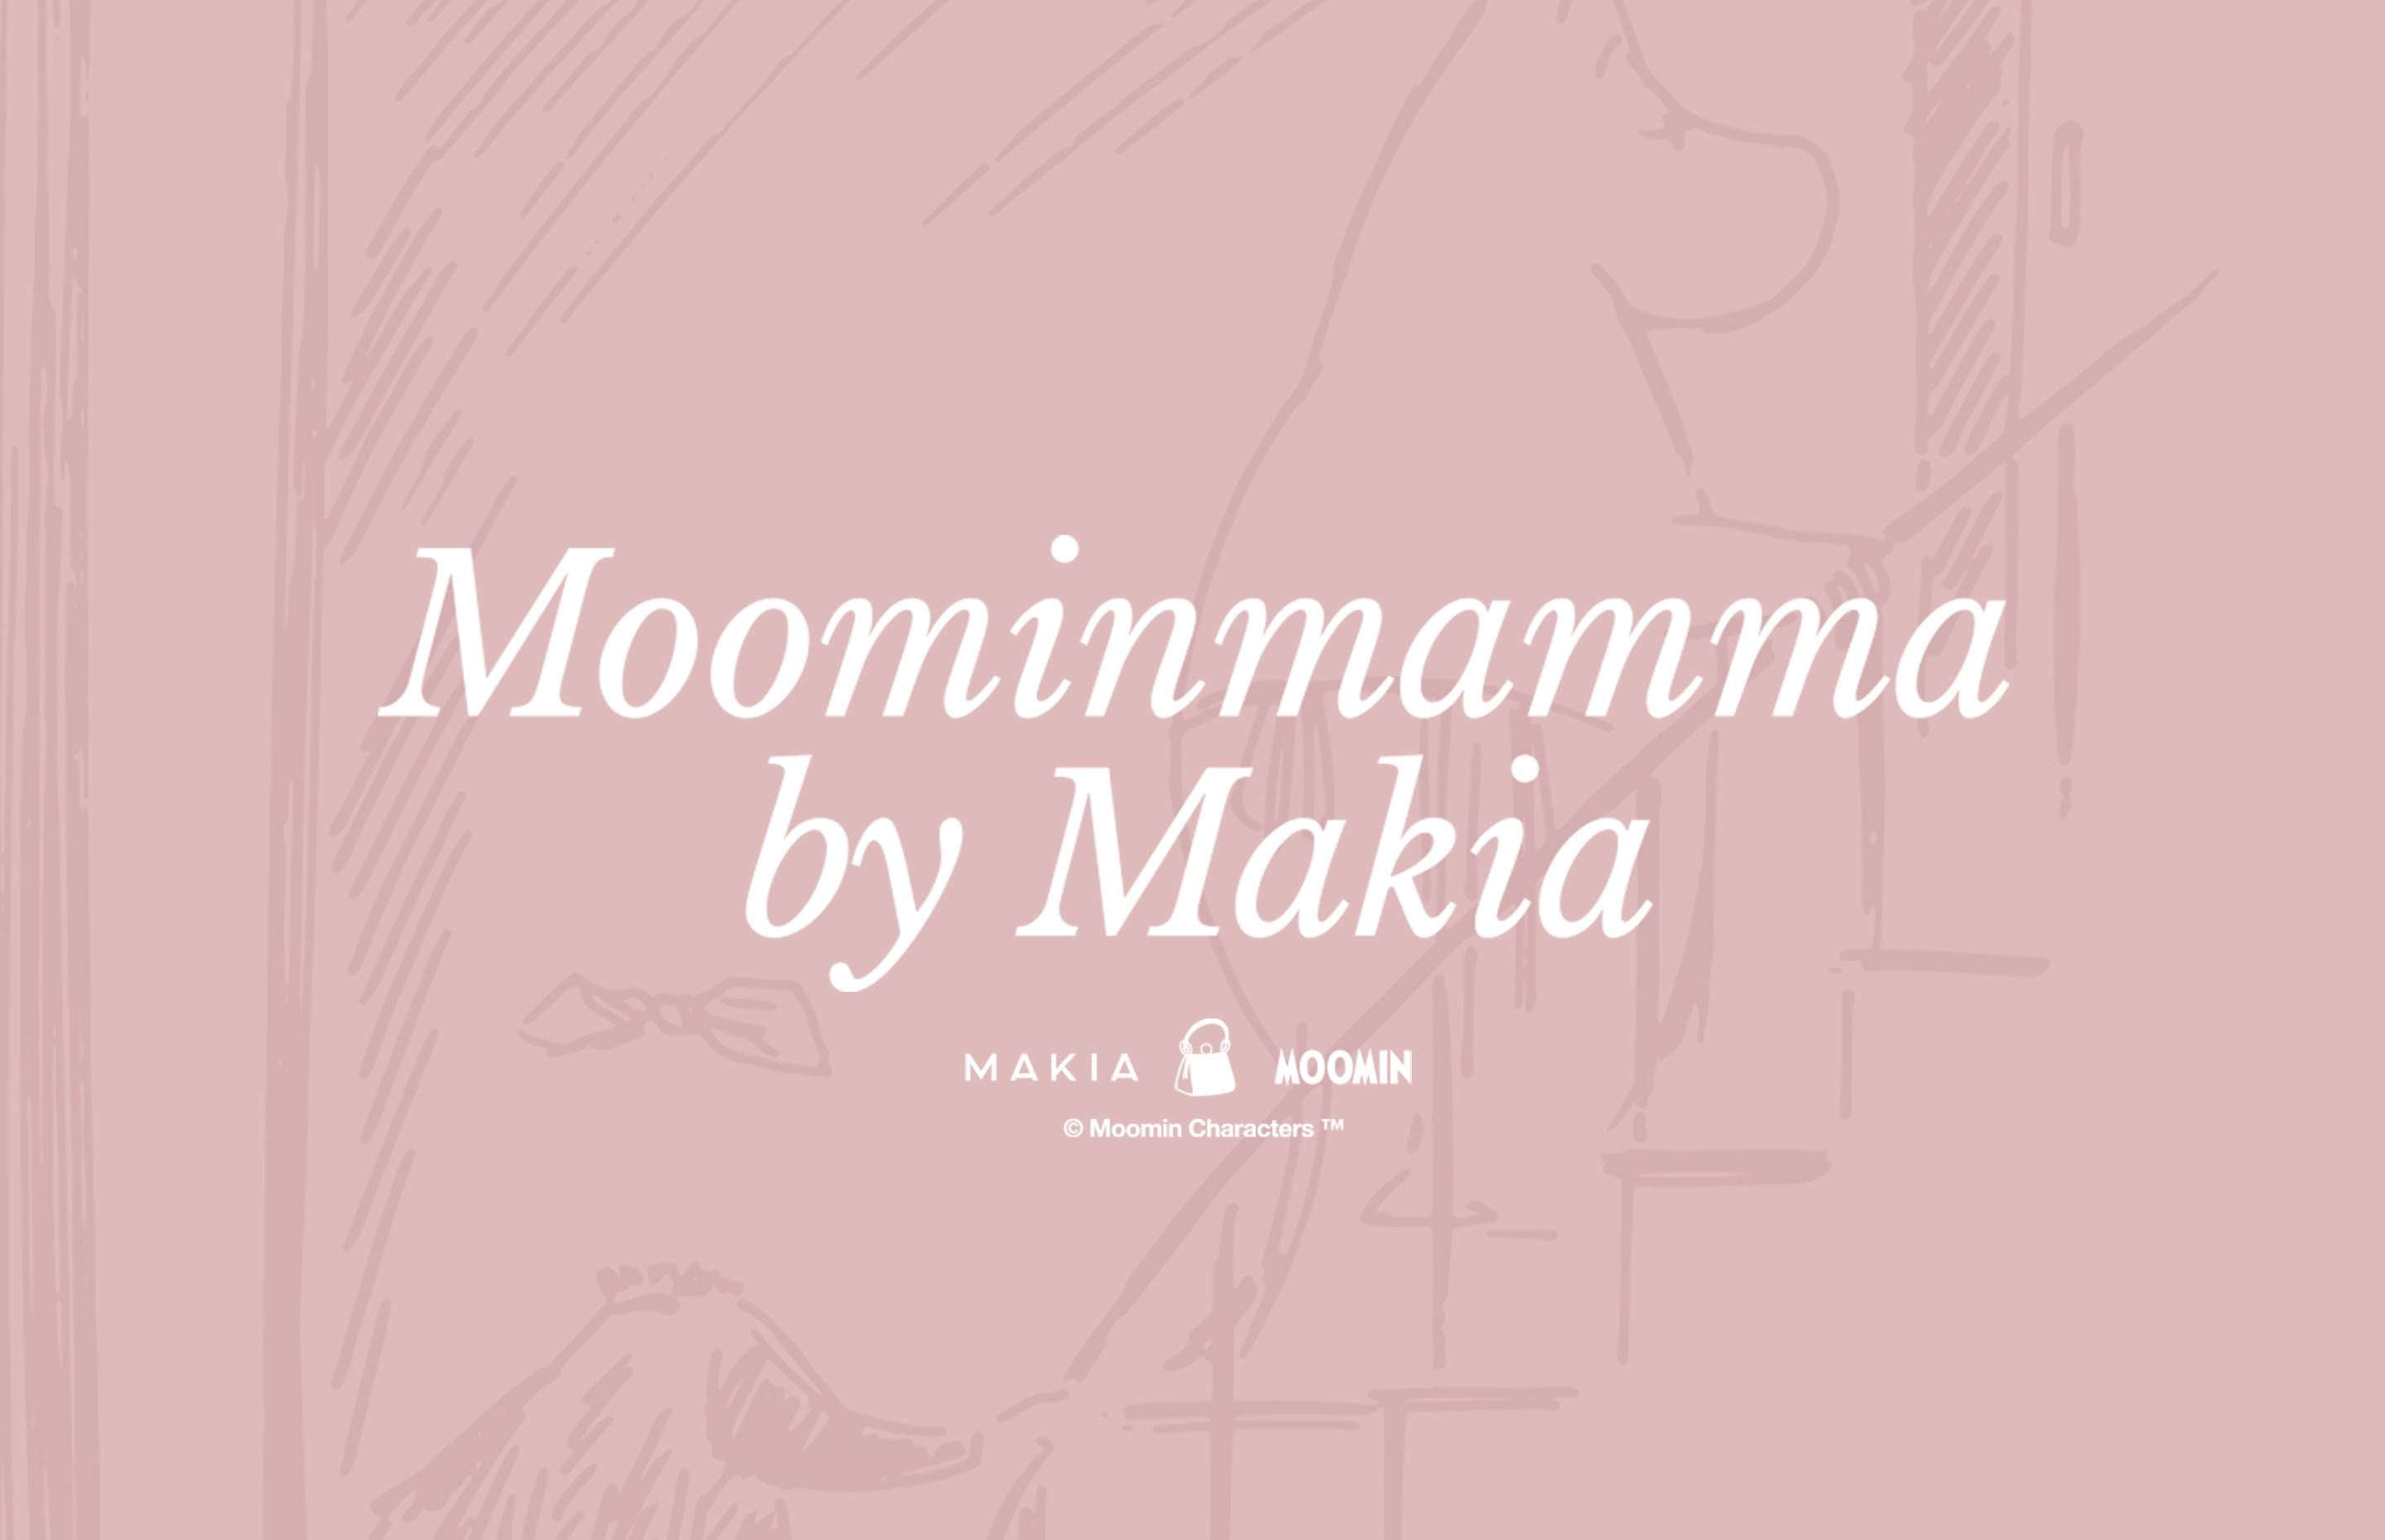 Moominmamma by Makia